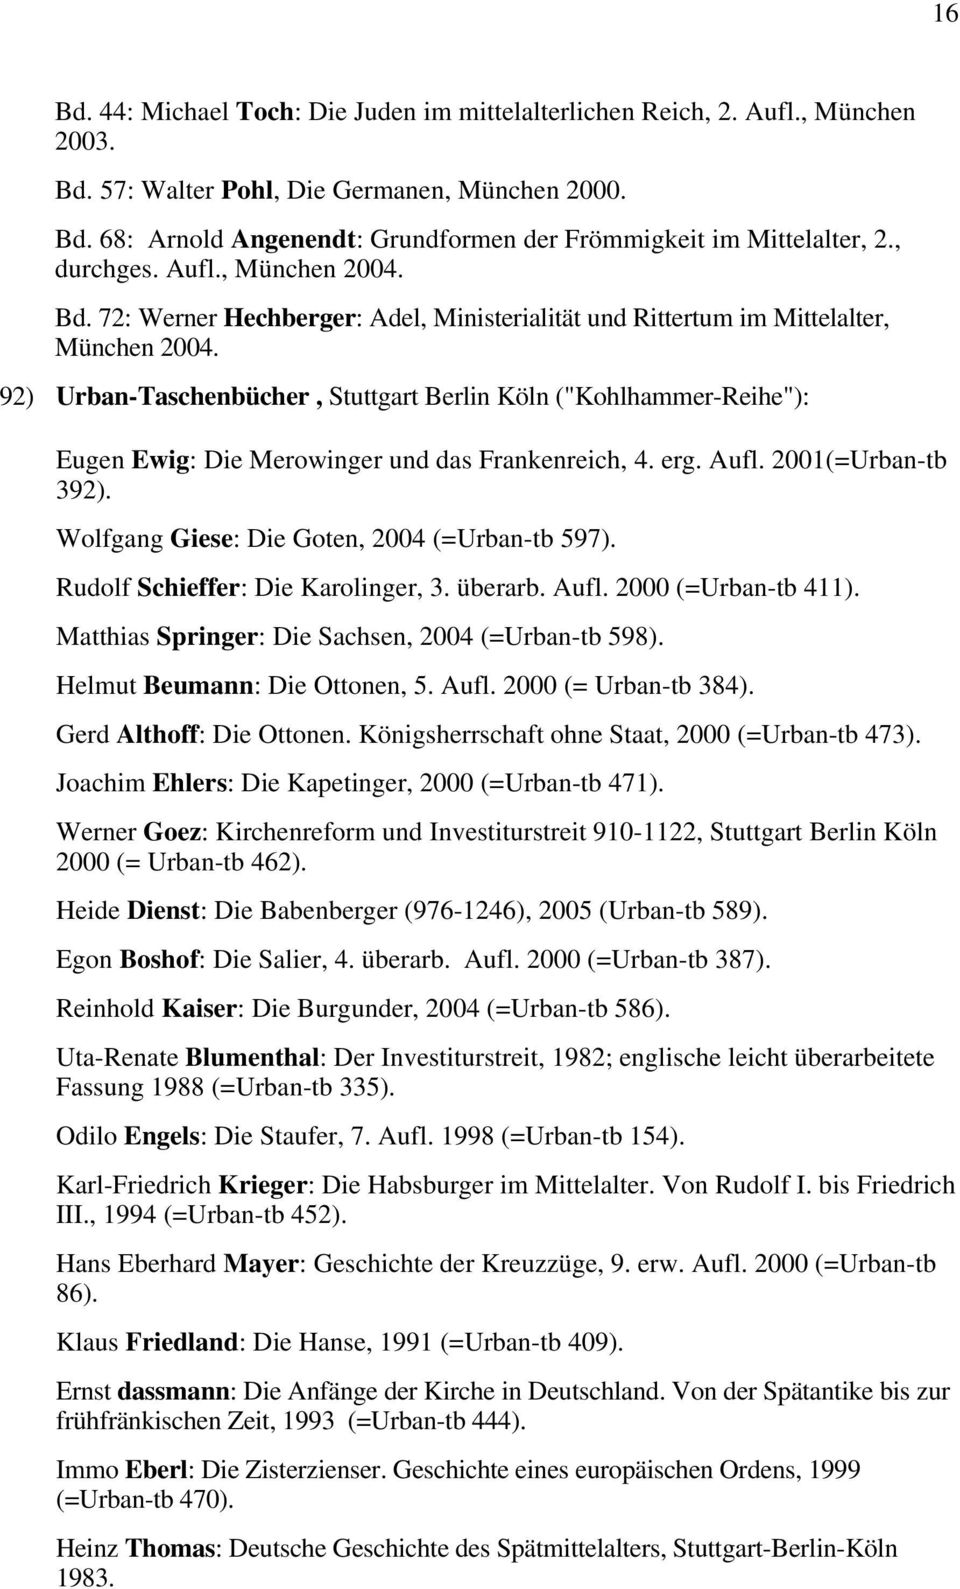 92) Urban-Taschenbücher, Stuttgart Berlin Köln ("Kohlhammer-Reihe"): Eugen Ewig: Die Merowinger und das Frankenreich, 4. erg. Aufl. 2001(=Urban-tb 392).